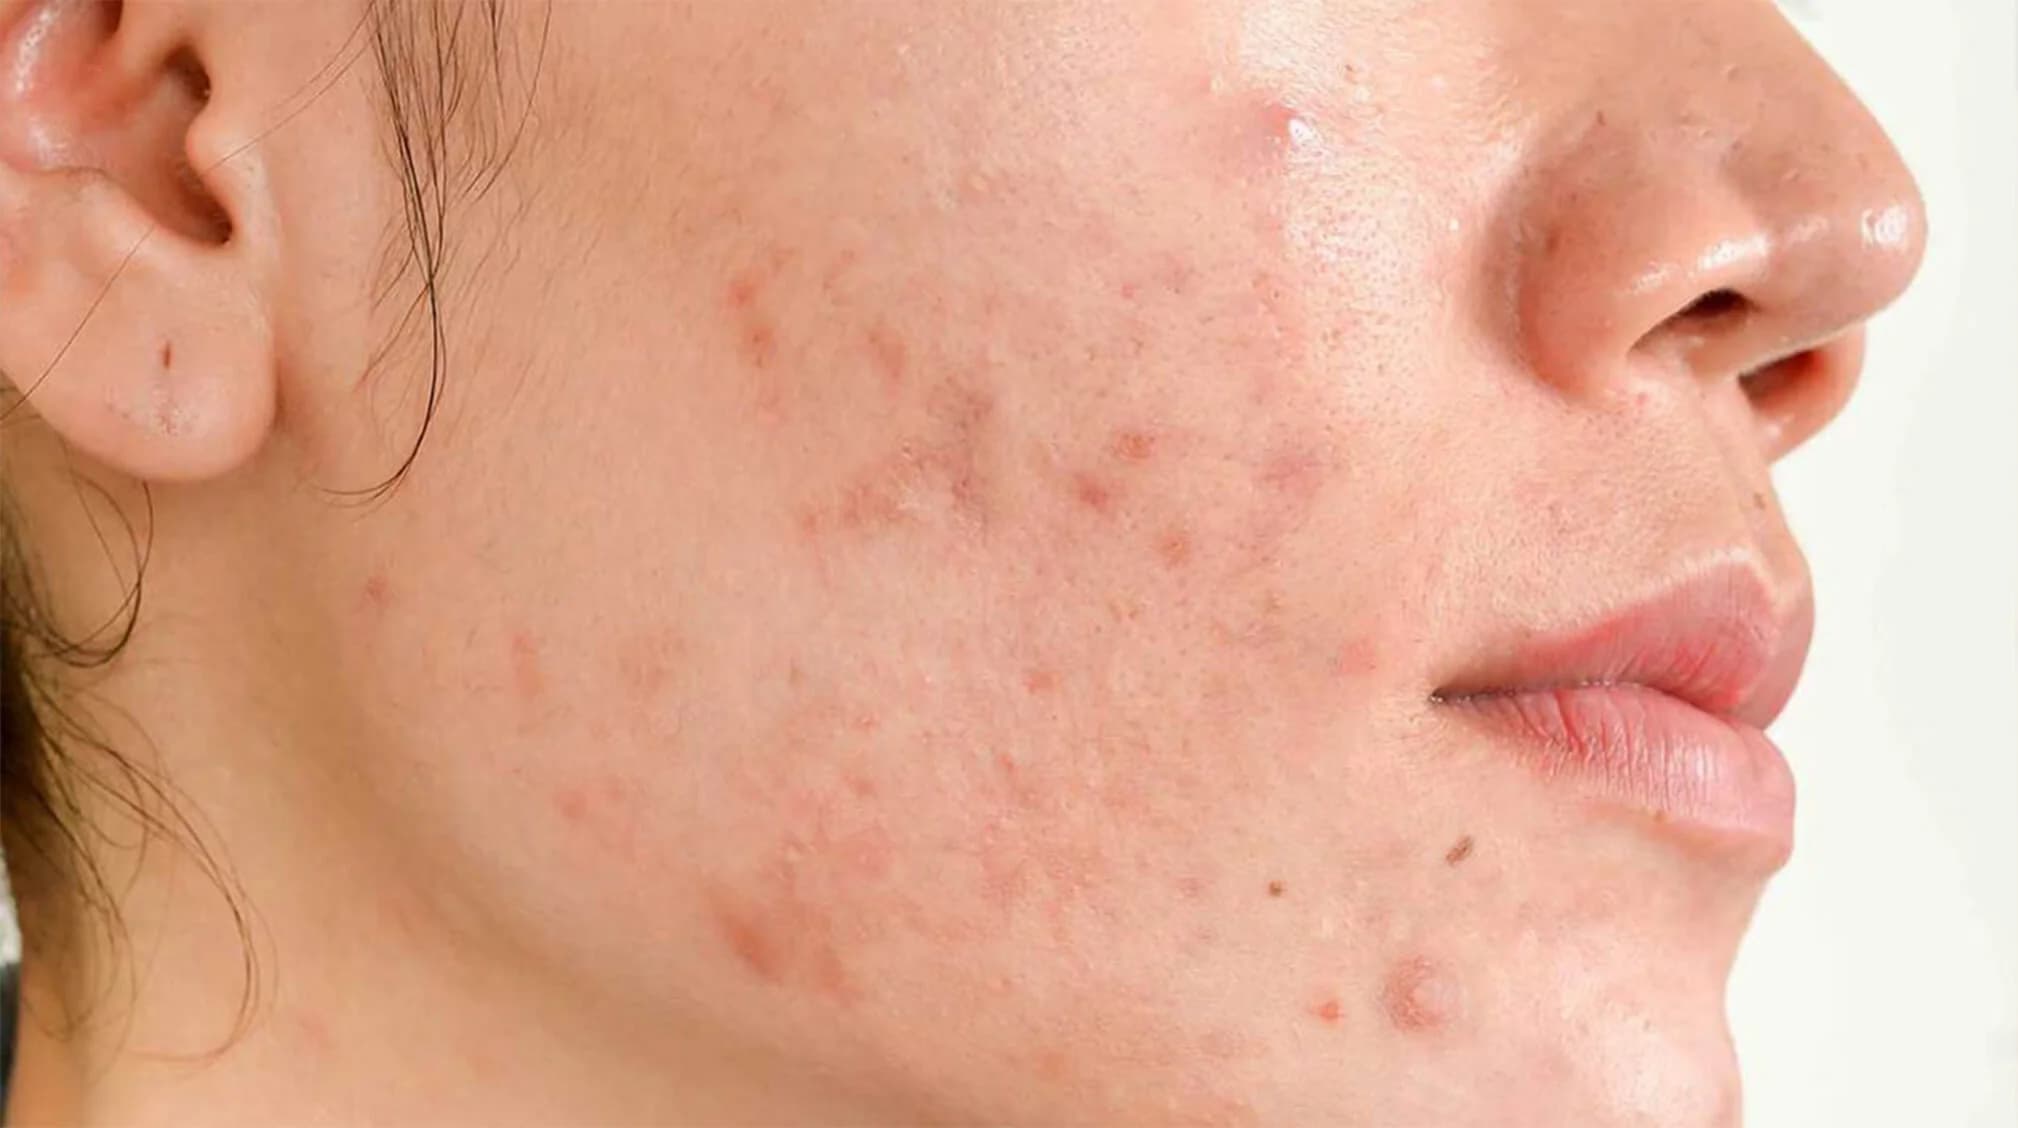 horomonal acne